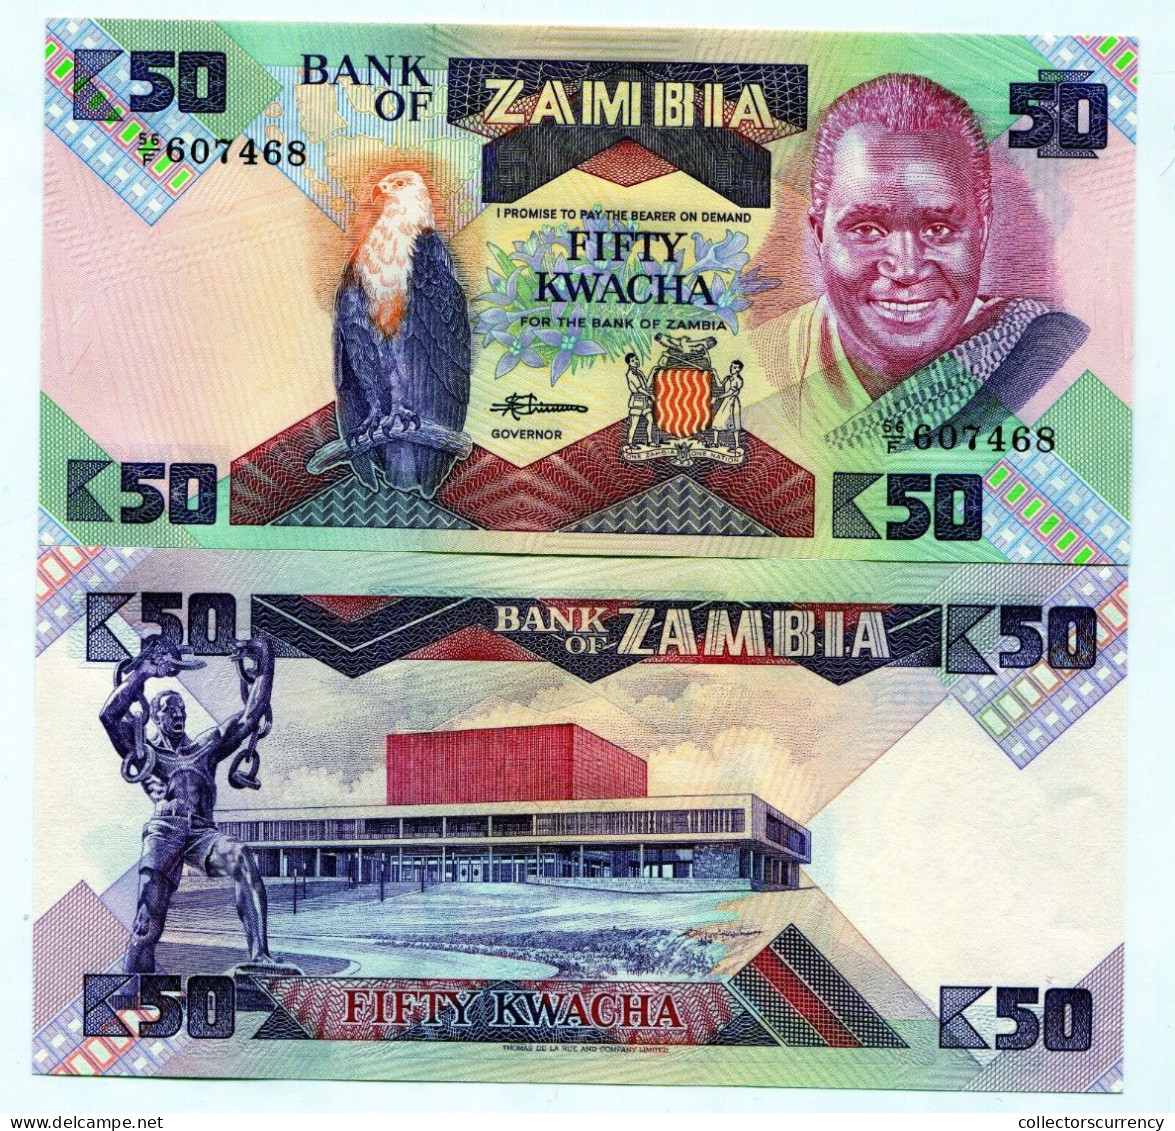 Zambia 50 Kwacha UNC P28 Banknote Paper Money 1986 X 25 Note Lot - 1/4 Bundle - Zambia